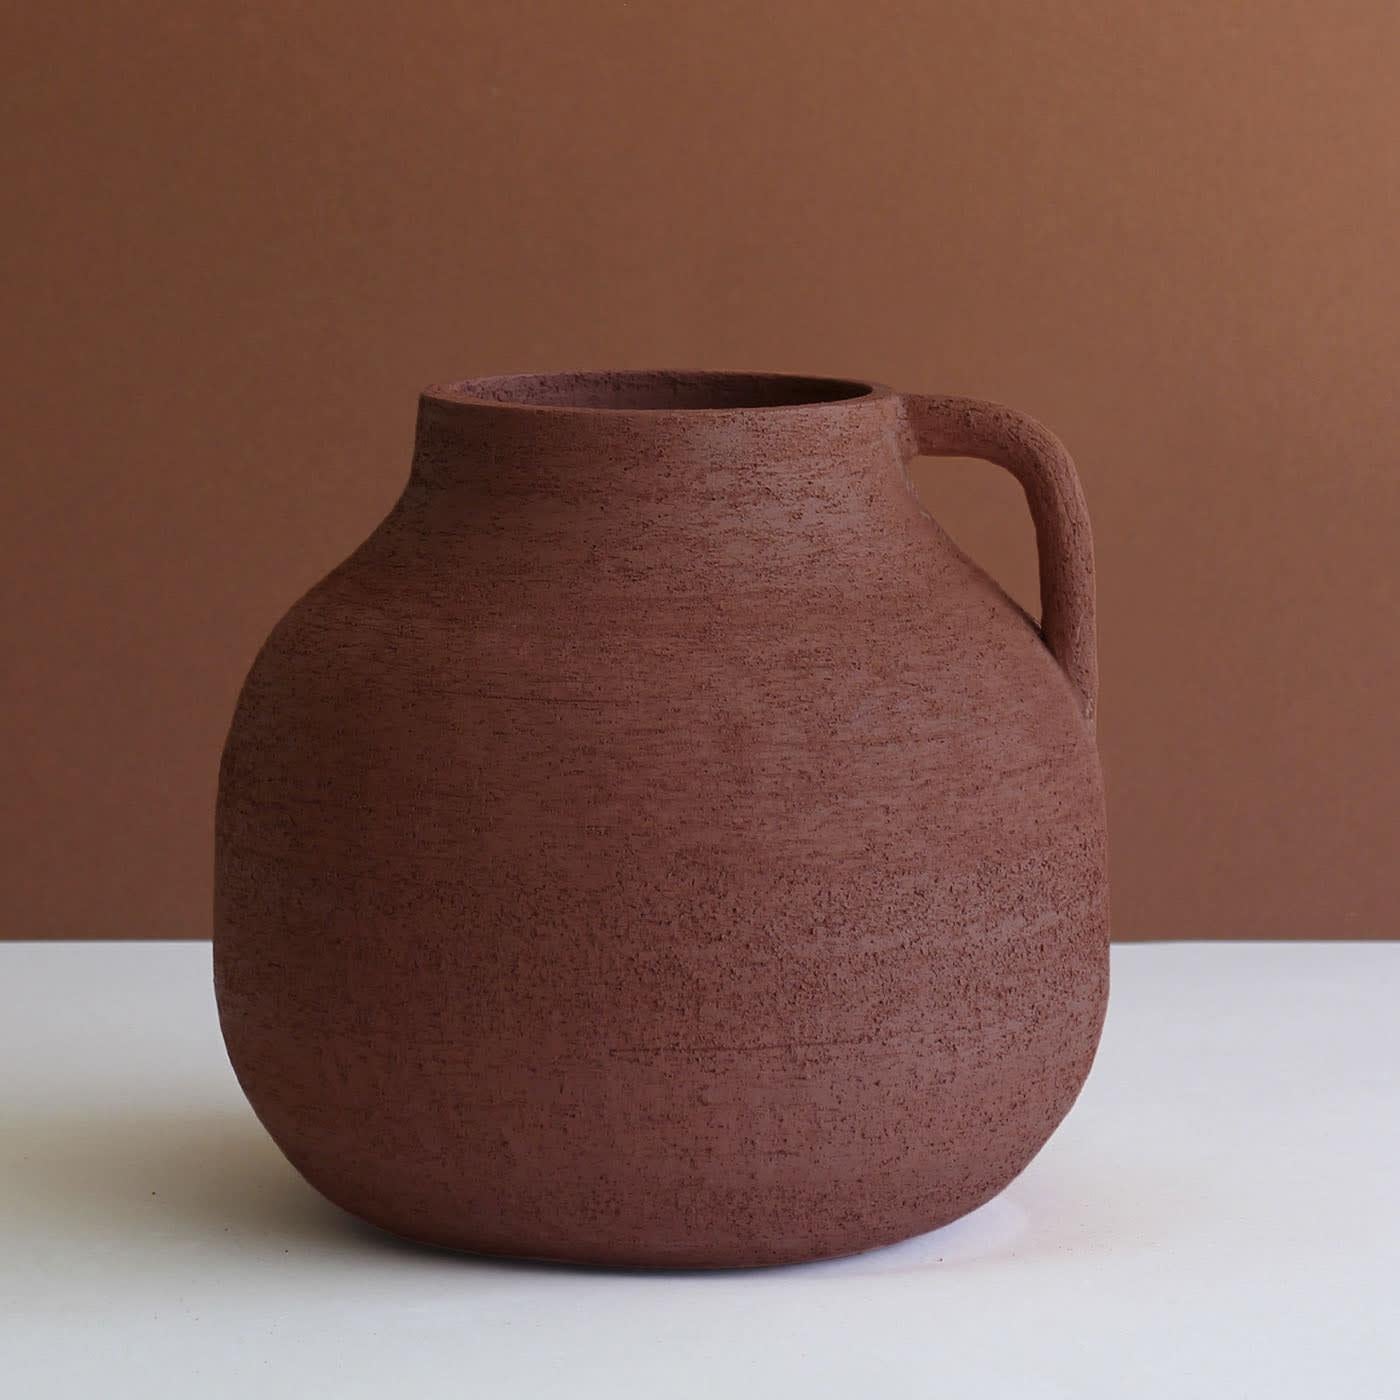 In dieser einzigartigen dekorativen Amphora trifft taktile Dynamik auf klare Linien. Die raffinierte, zerkratzte Textur wird aus Steinzeug hergestellt und in einem tiefen Rotton angeboten, der dem Interieur einen Hauch von Wärme verleiht. Die